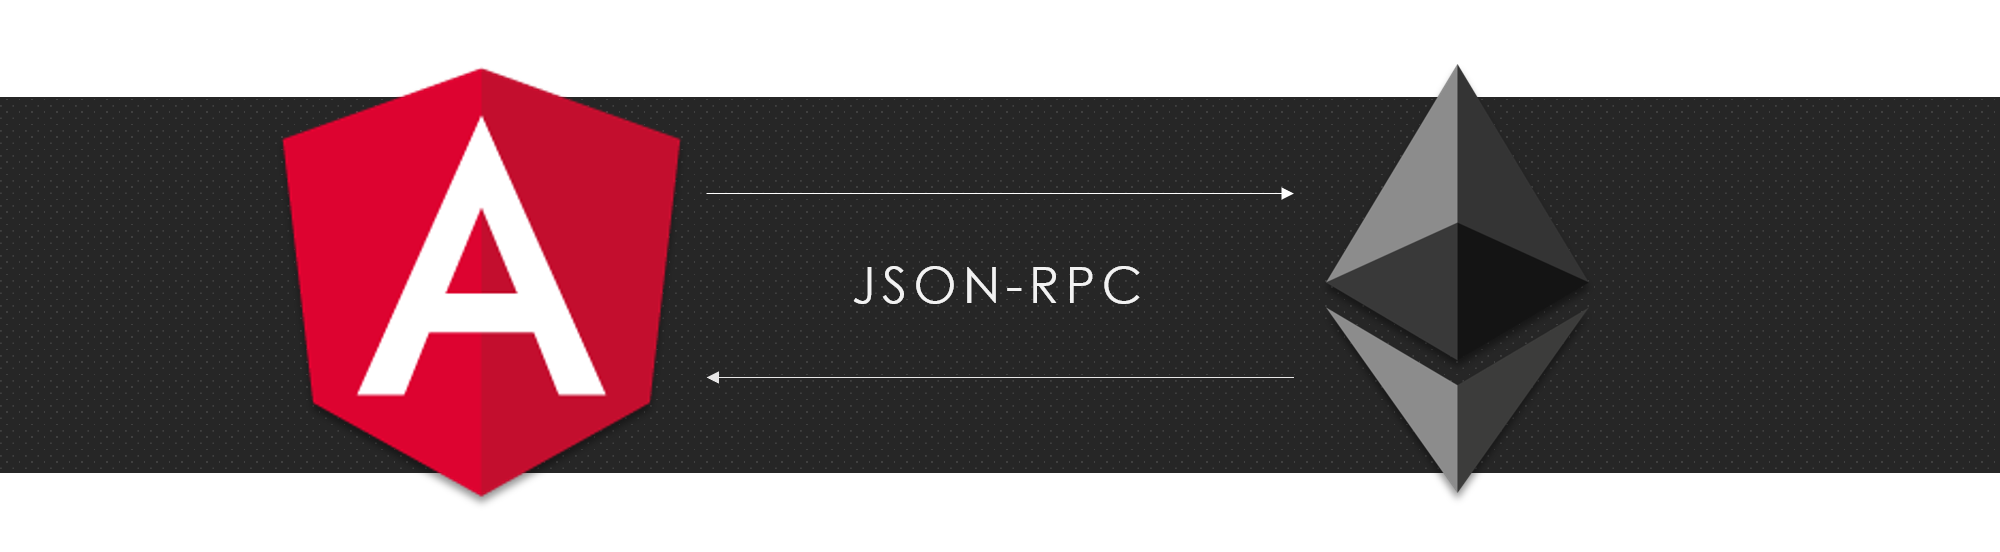 Json RPC. Пример json RPC. Стандарт RPC. "Json-RPC" logo. Internal json rpc